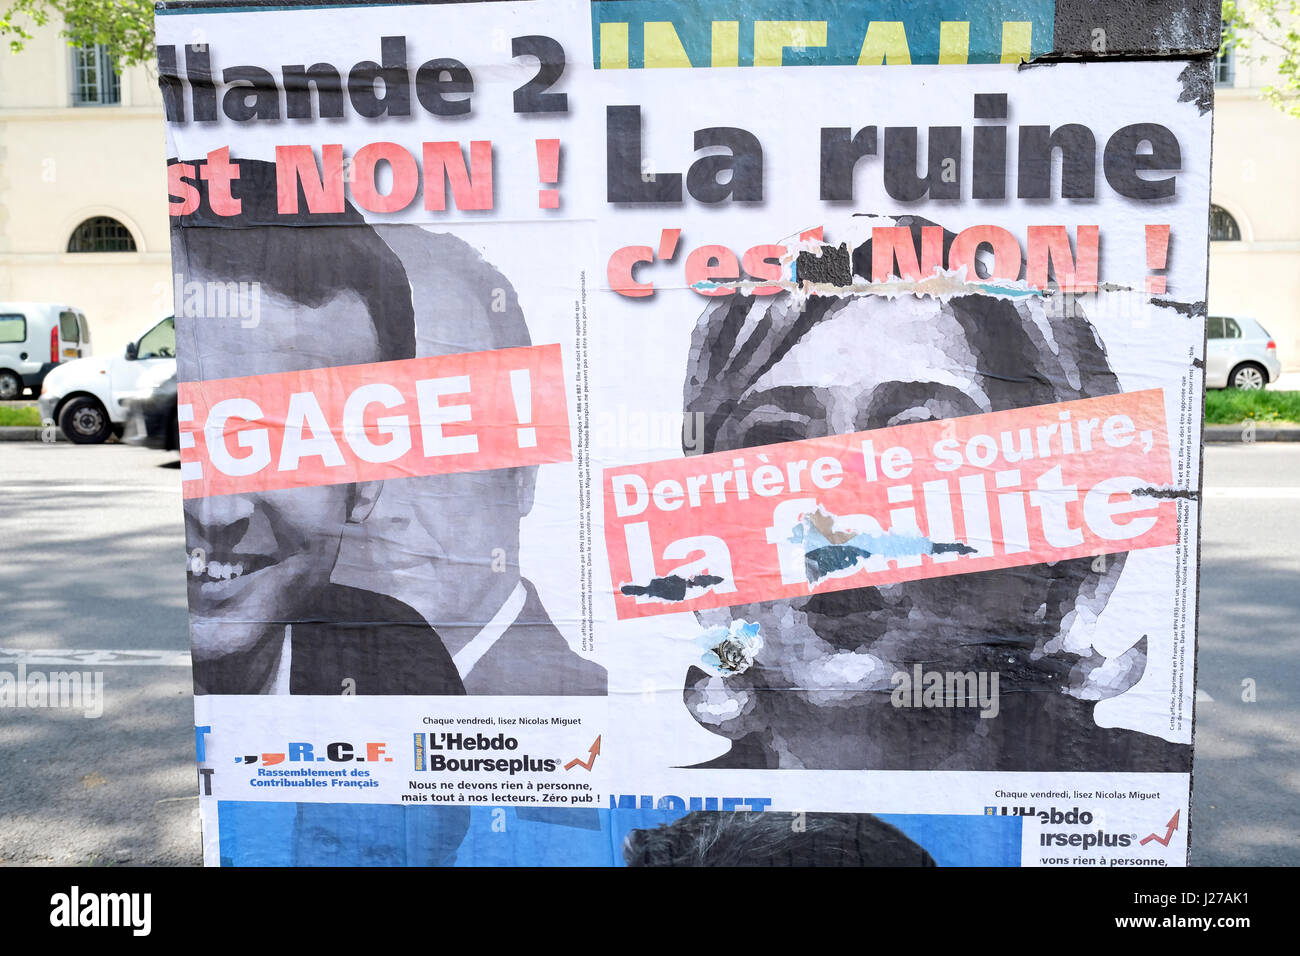 Affiches de la rue de l'élection présidentielle française de 2017 candidats Marine Le Pen et Emmanuel Macron Banque D'Images